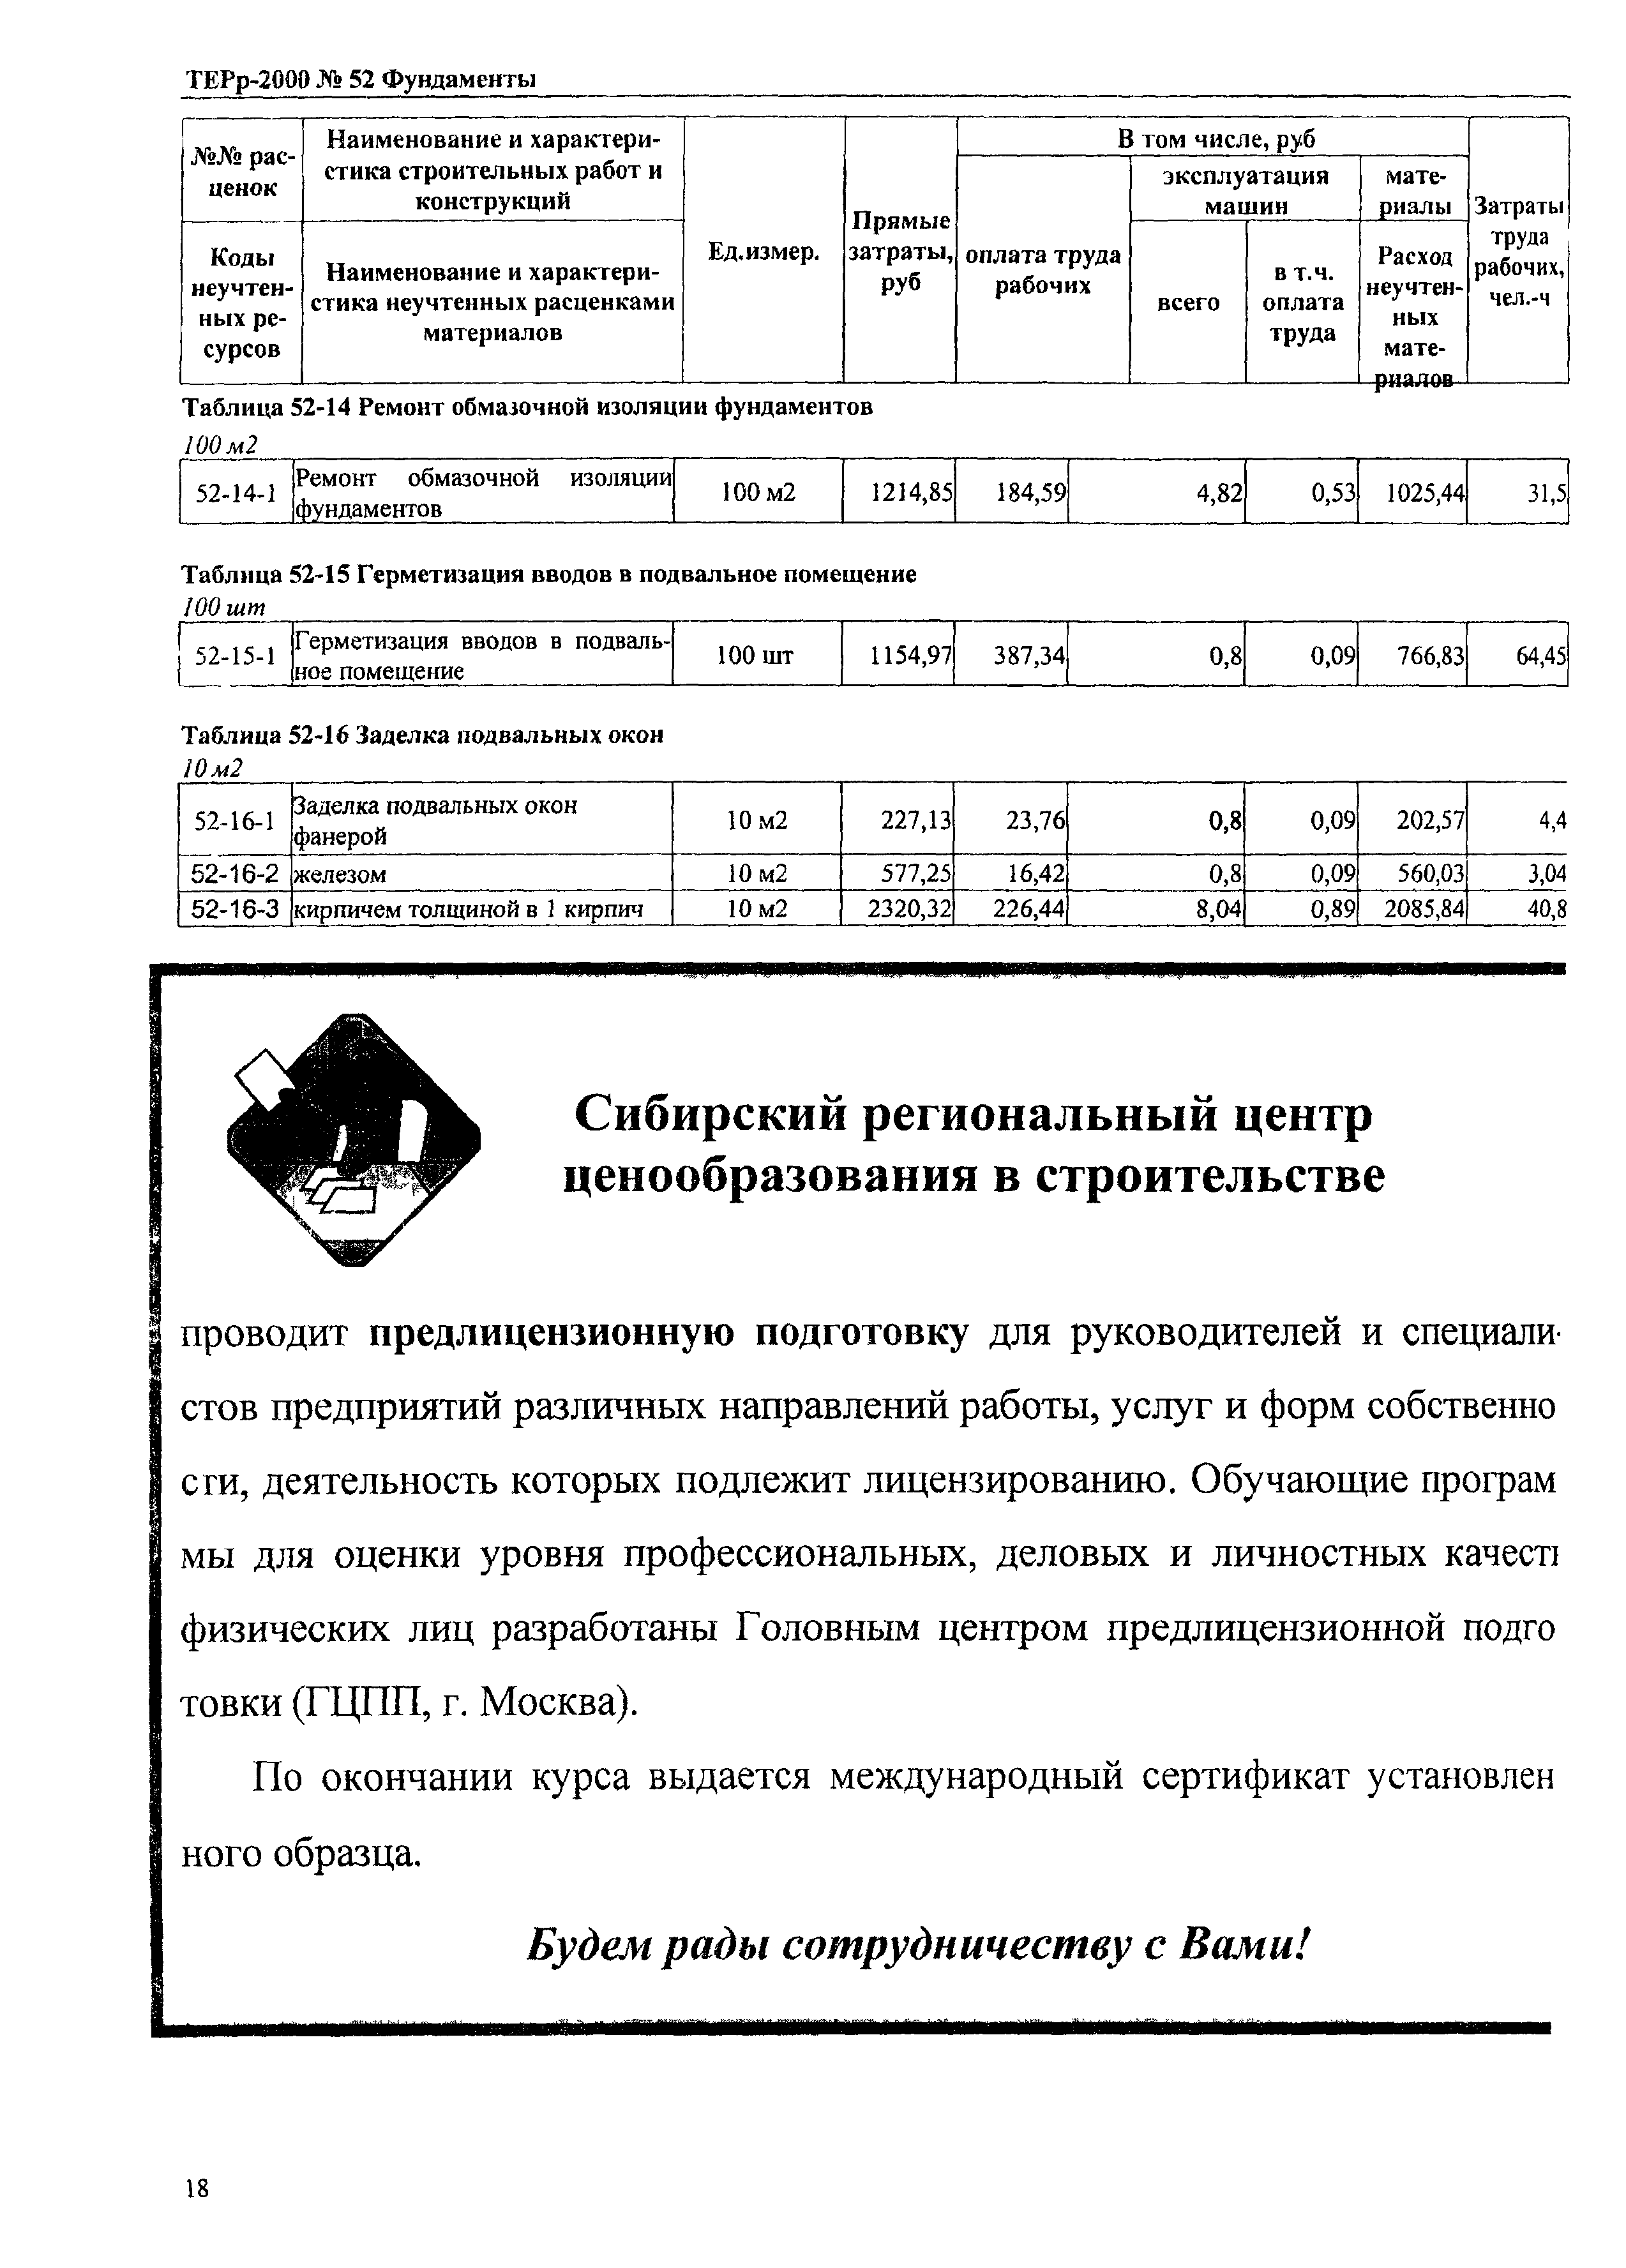 ТЕРр Омская область 2000